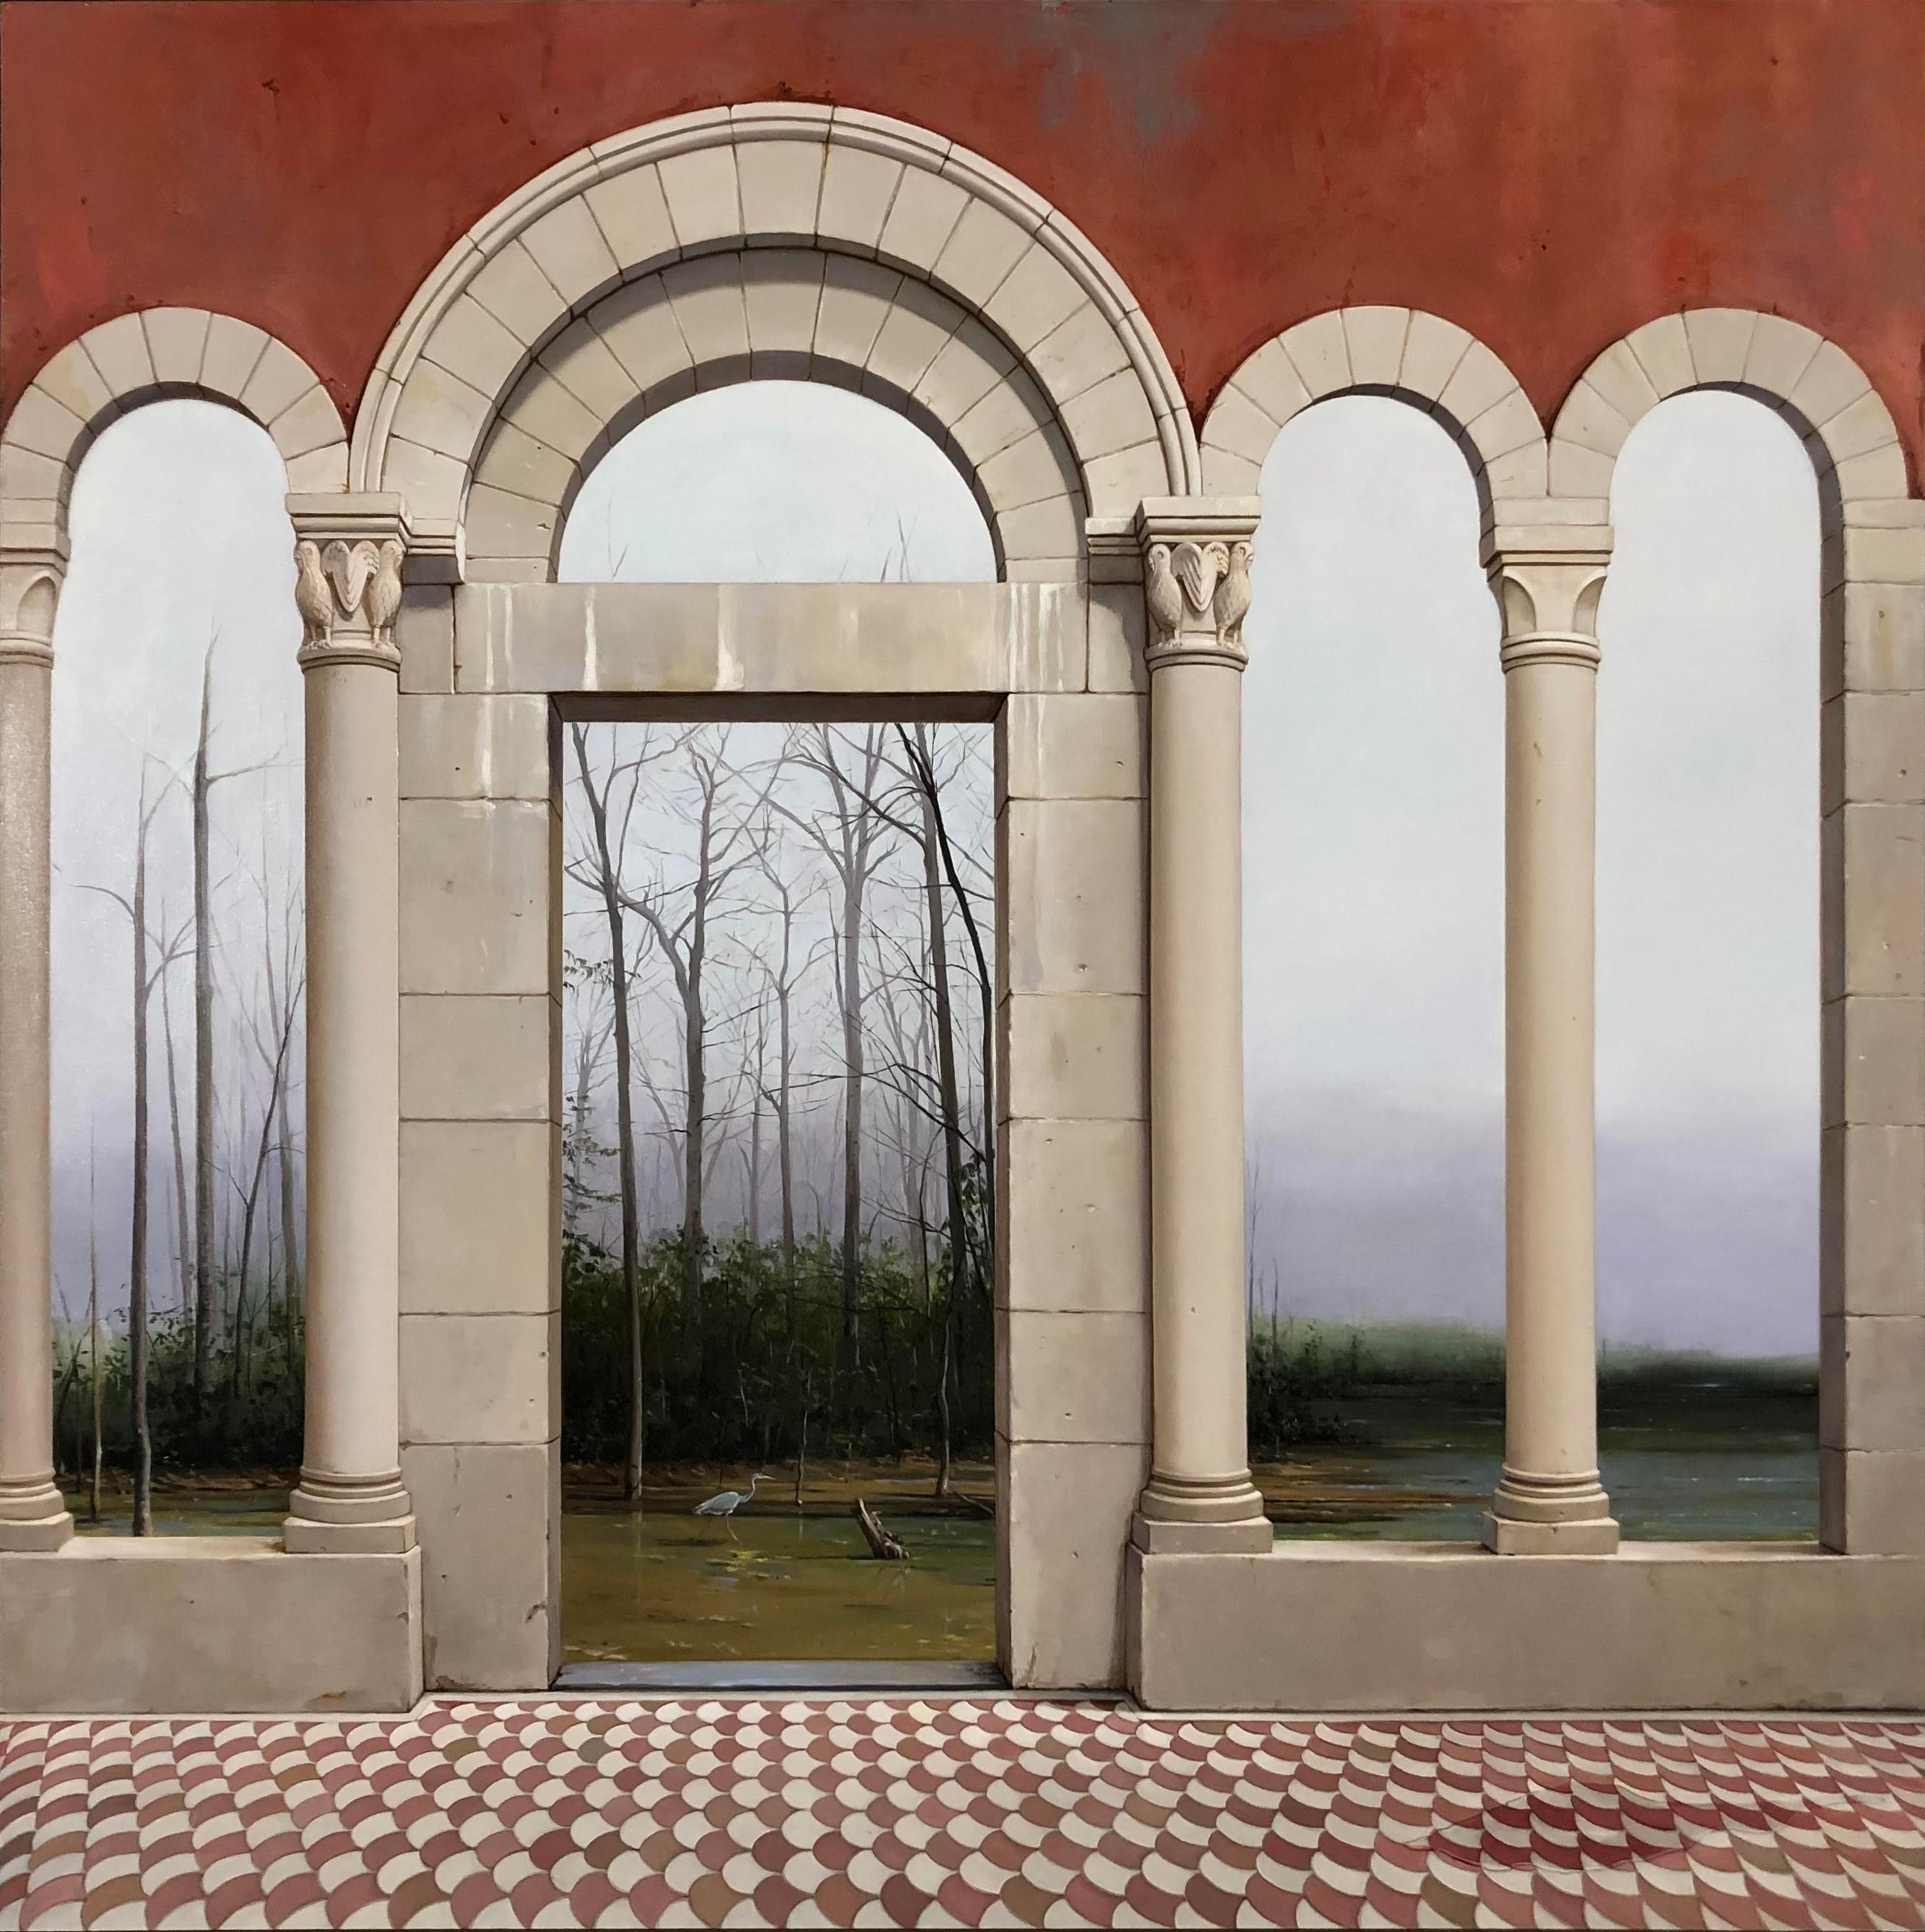 Landscape Painting Carol Pylant - La Scomparsa - Anciennes portes architecturales en arc de cercle menant à un paysage luxuriant